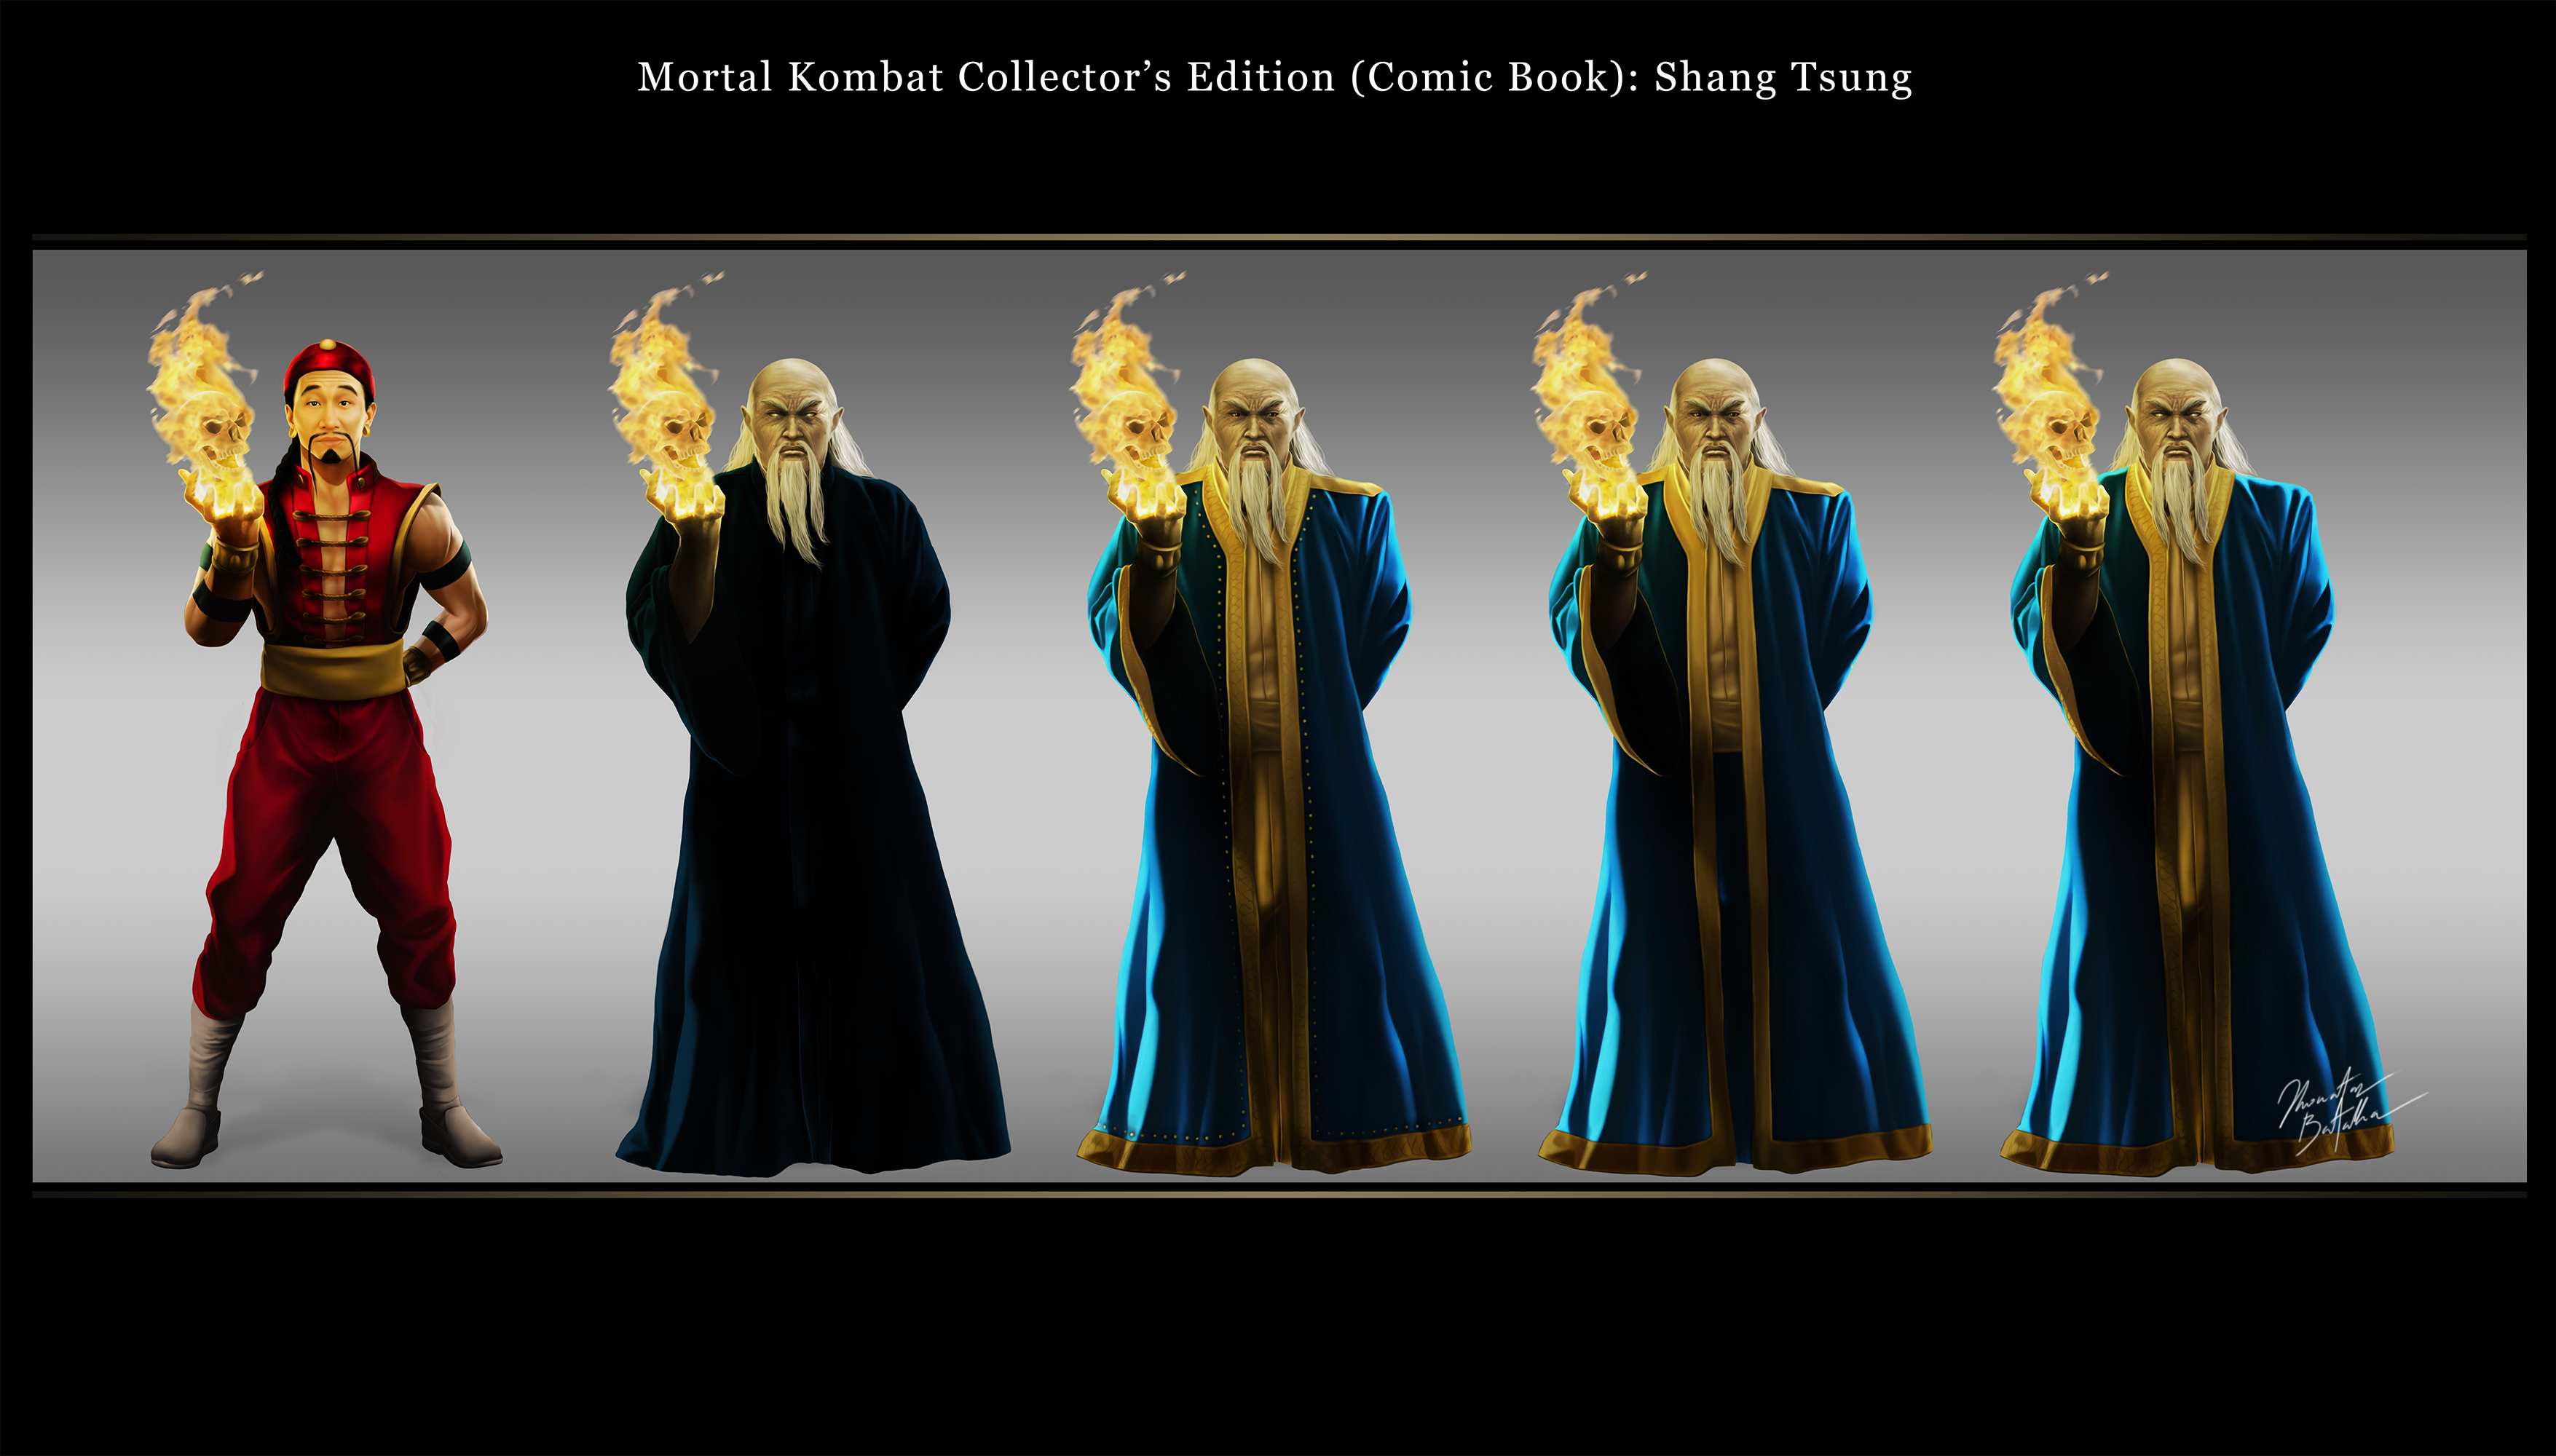 MK-Shang Tsung by PJMarts1 on DeviantArt